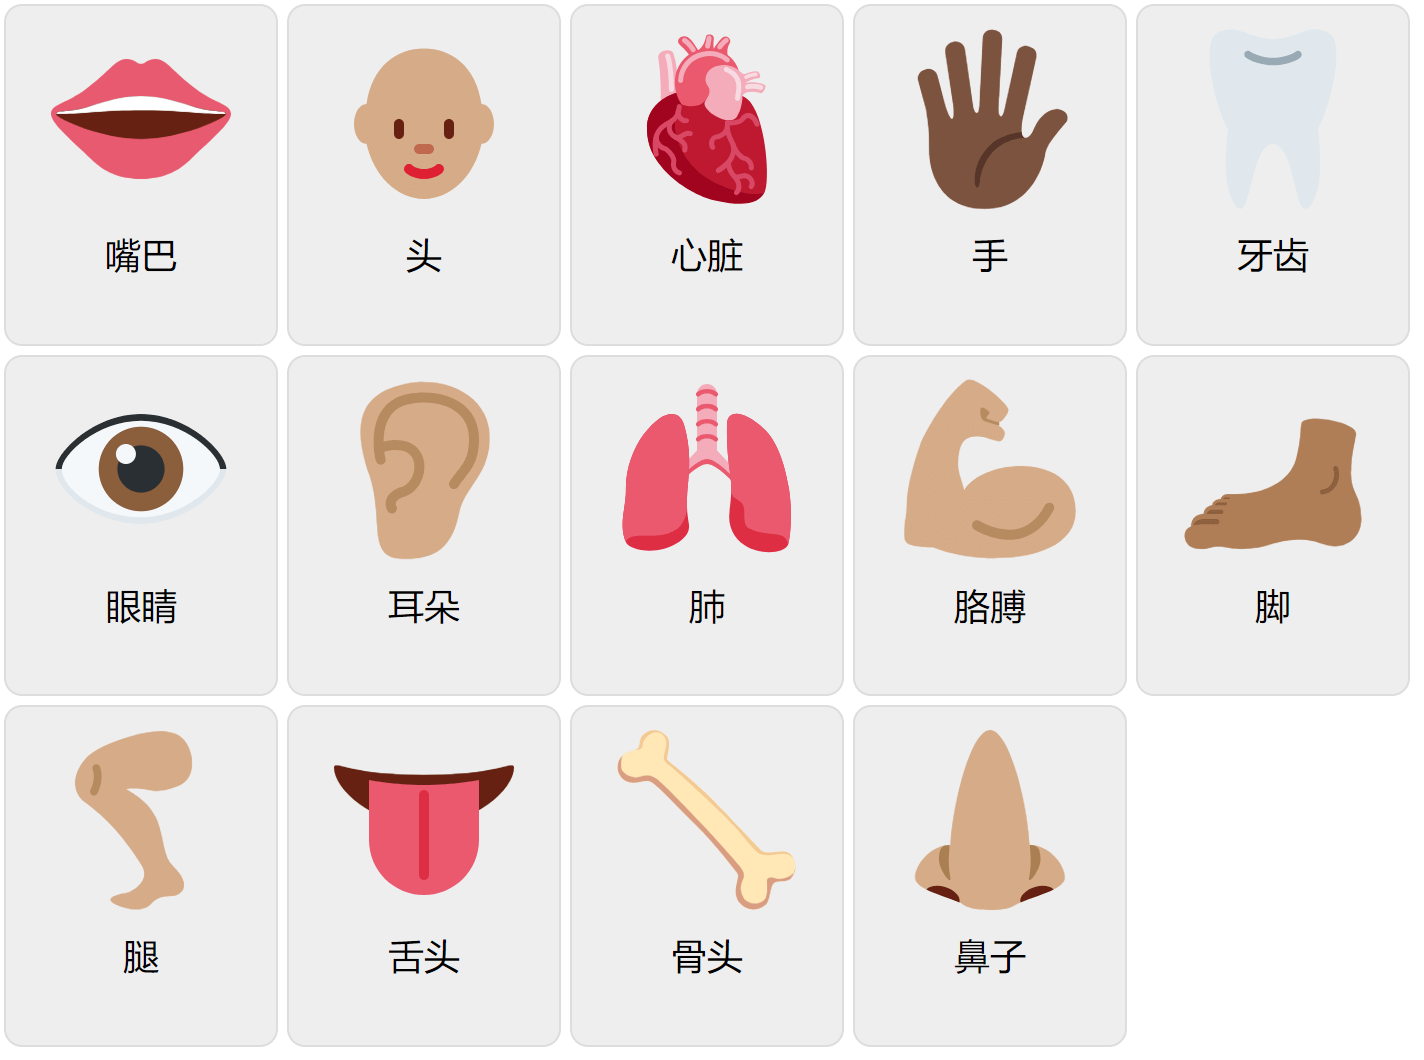 Kroppsdelar på kinesiska